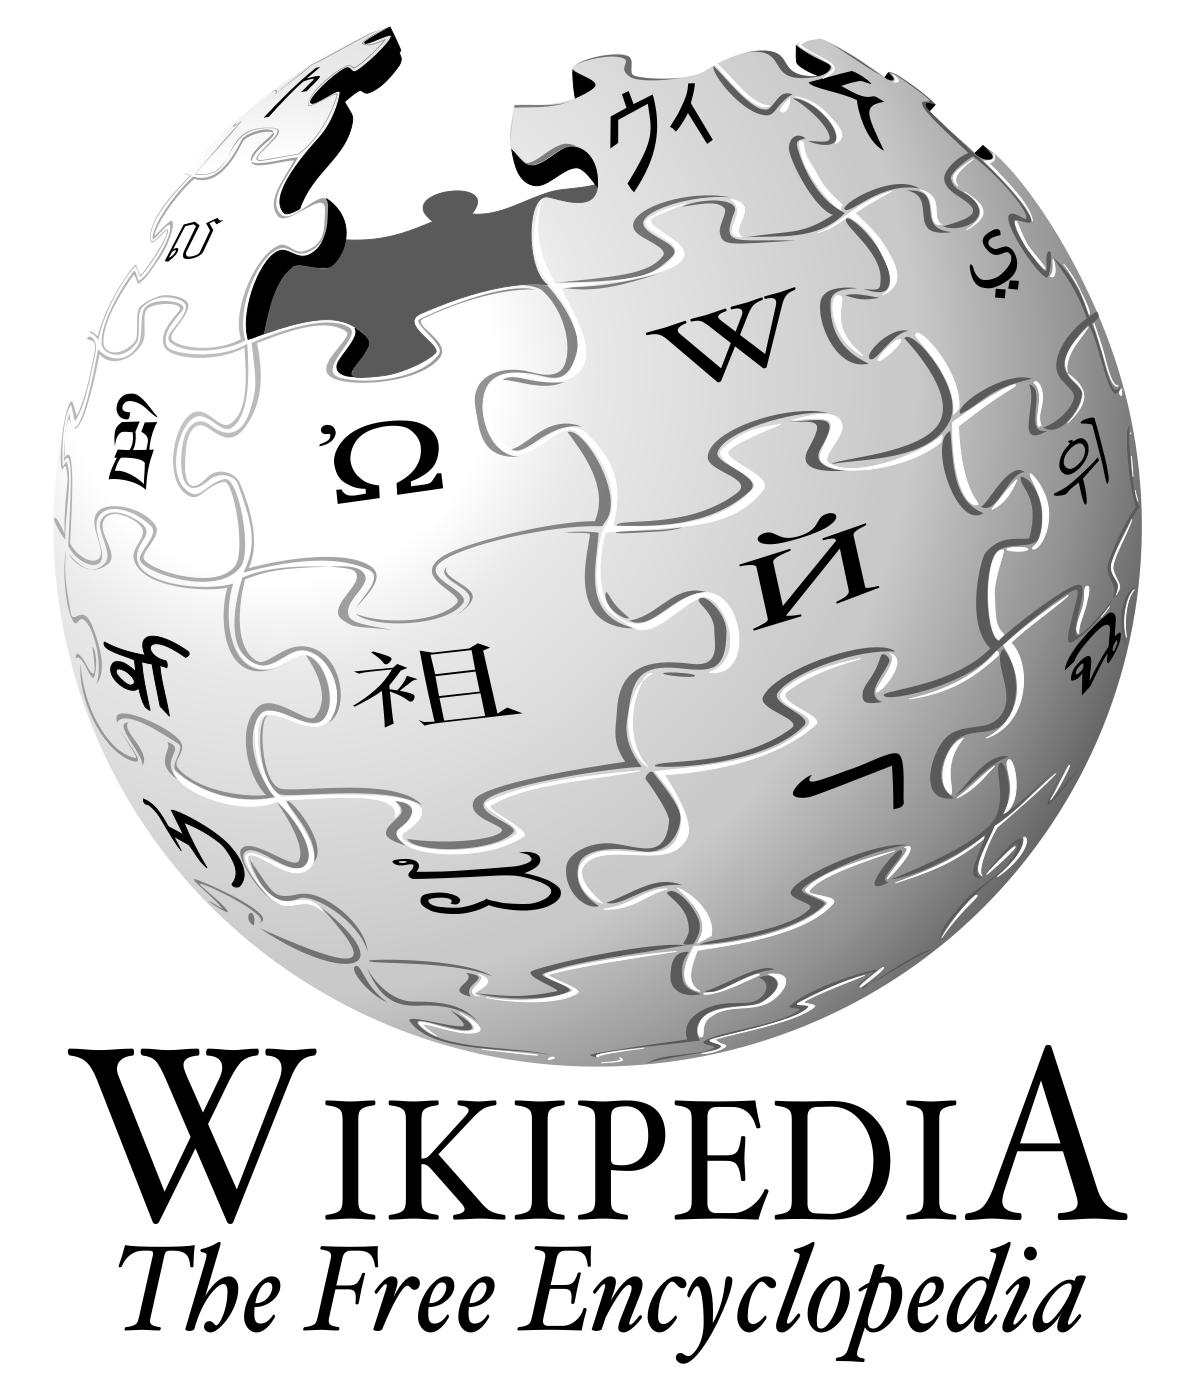 Https www wikipedia. Википедия картинки. Википедия логотип. Значок Википедии. Ремипедия.